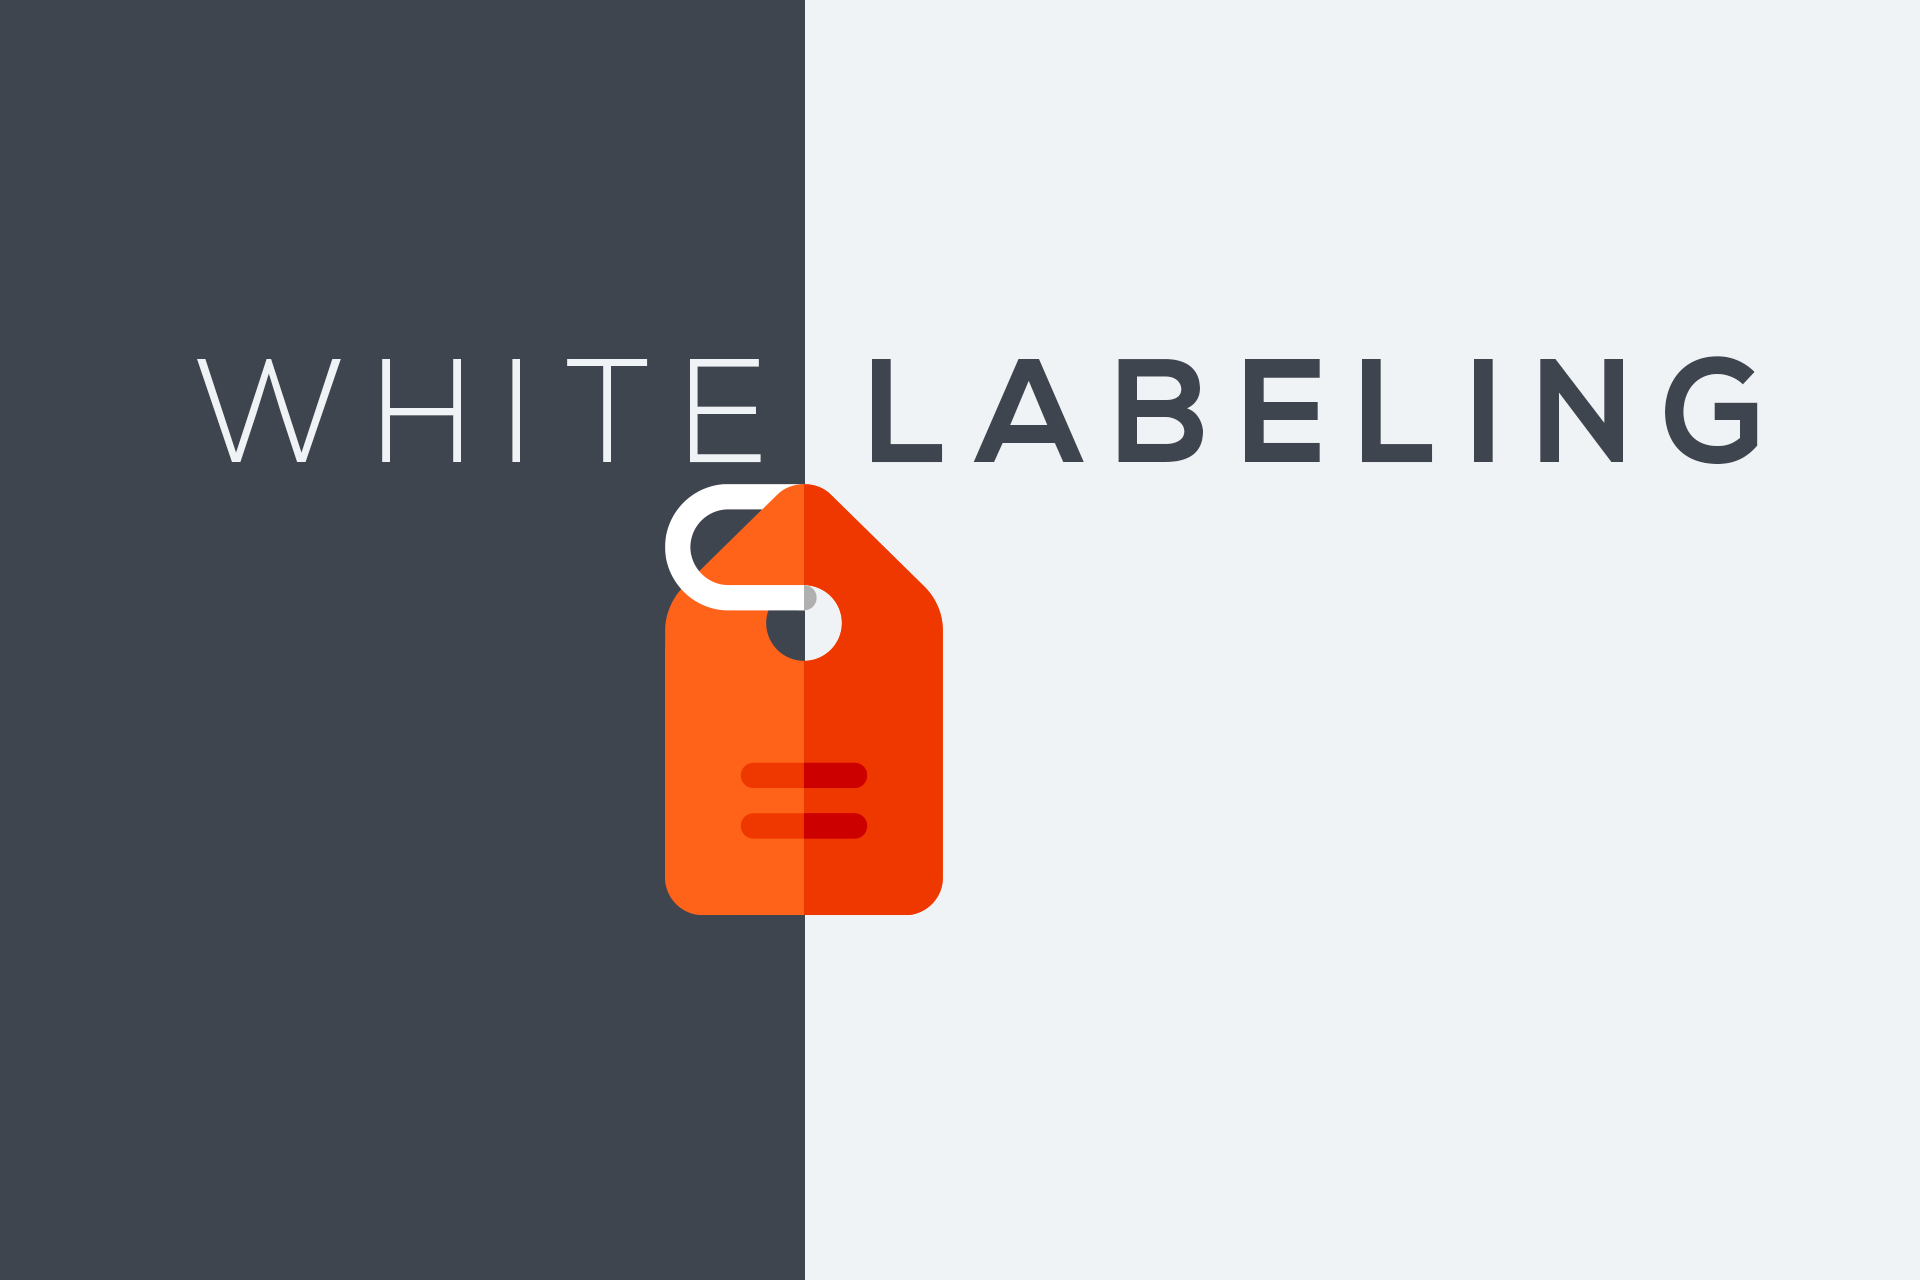 White-label content